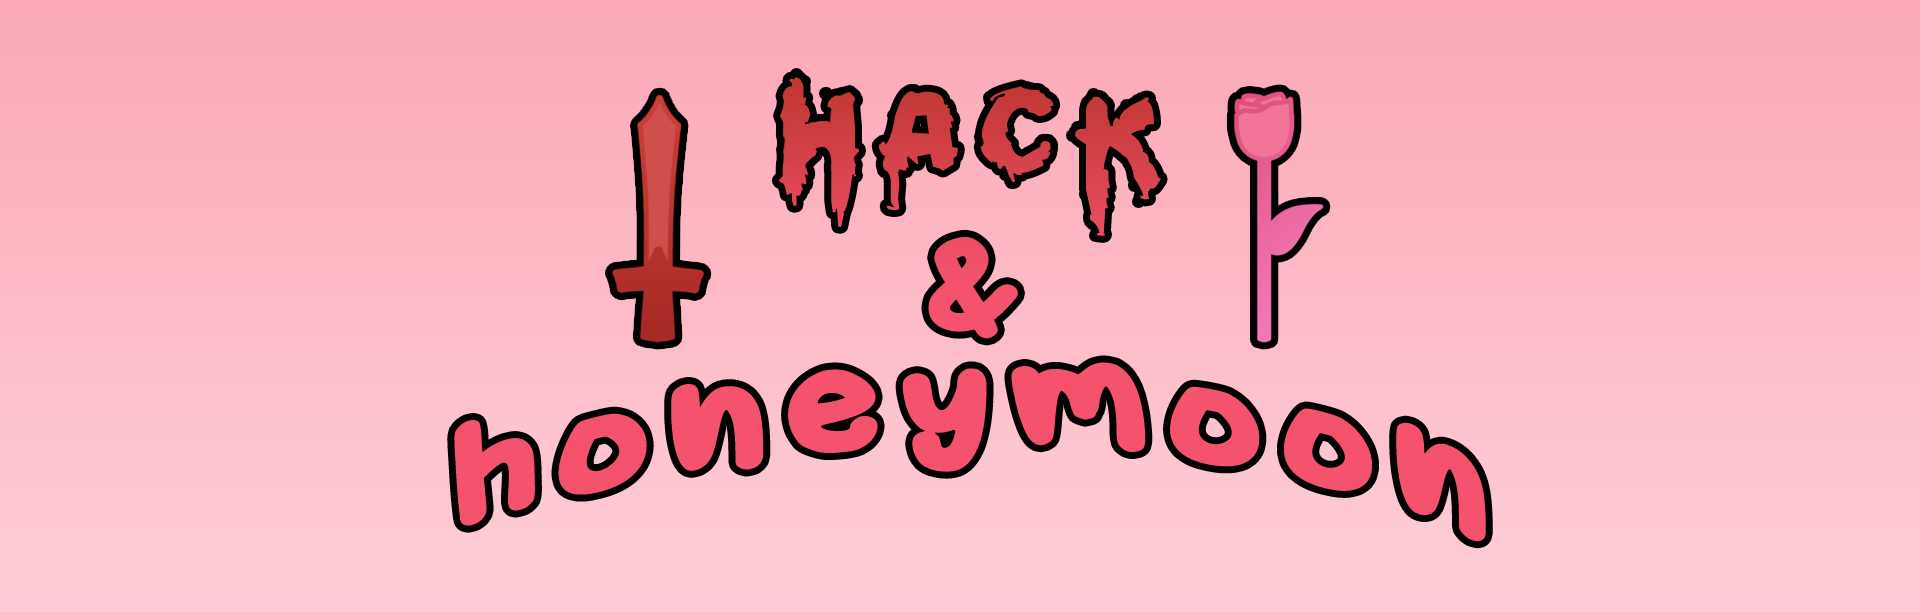 Hack & Honeymoon